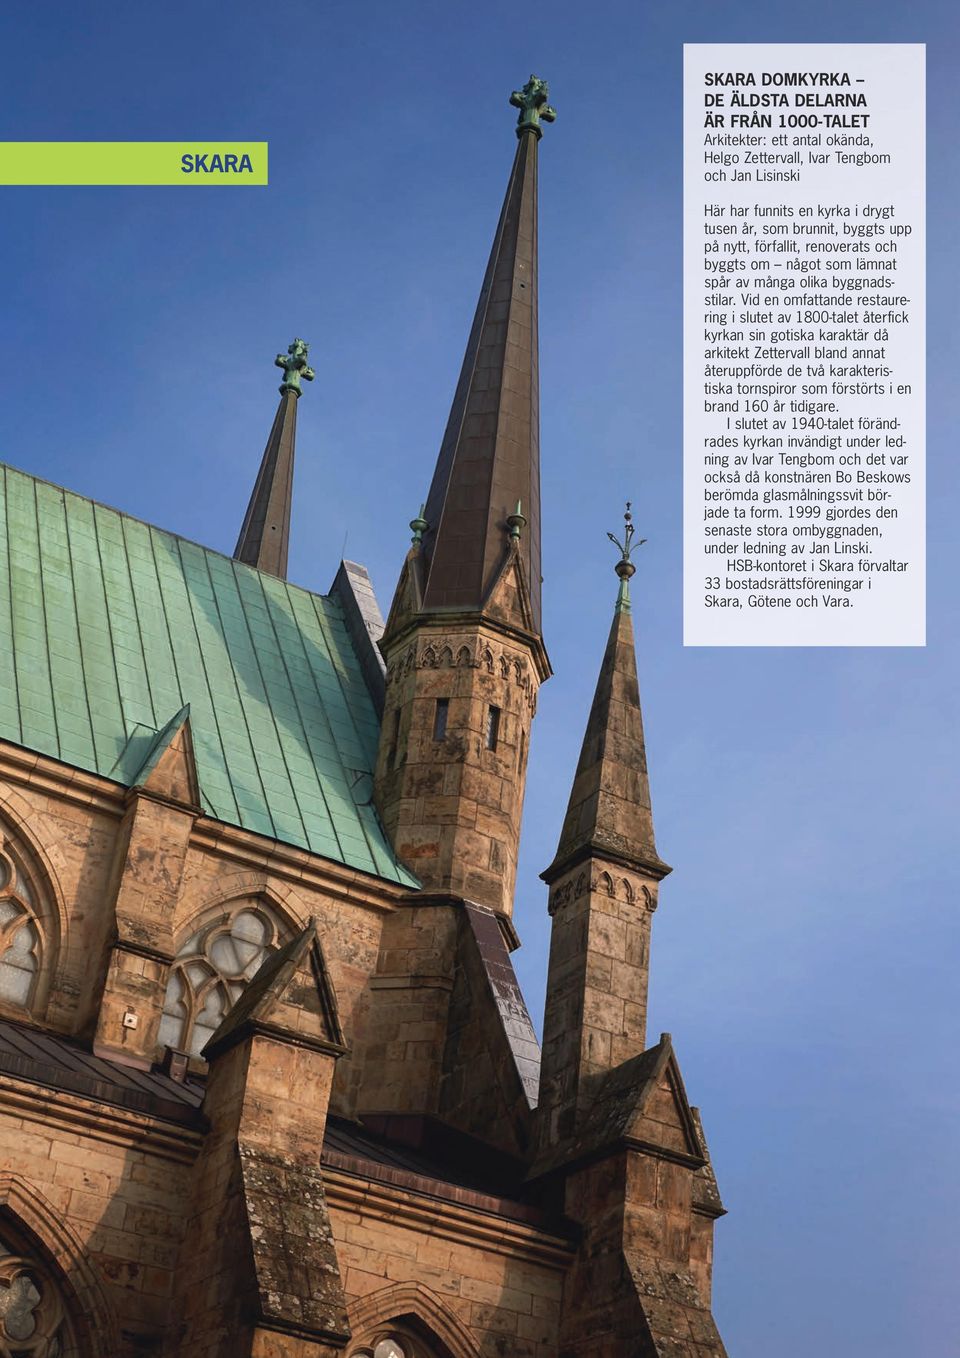 Vid en omfattande restaurering i slutet av 1800-talet återfick kyrkan sin gotiska karaktär då arkitekt Zettervall bland annat återuppförde de två karakteristiska tornspiror som förstörts i en brand